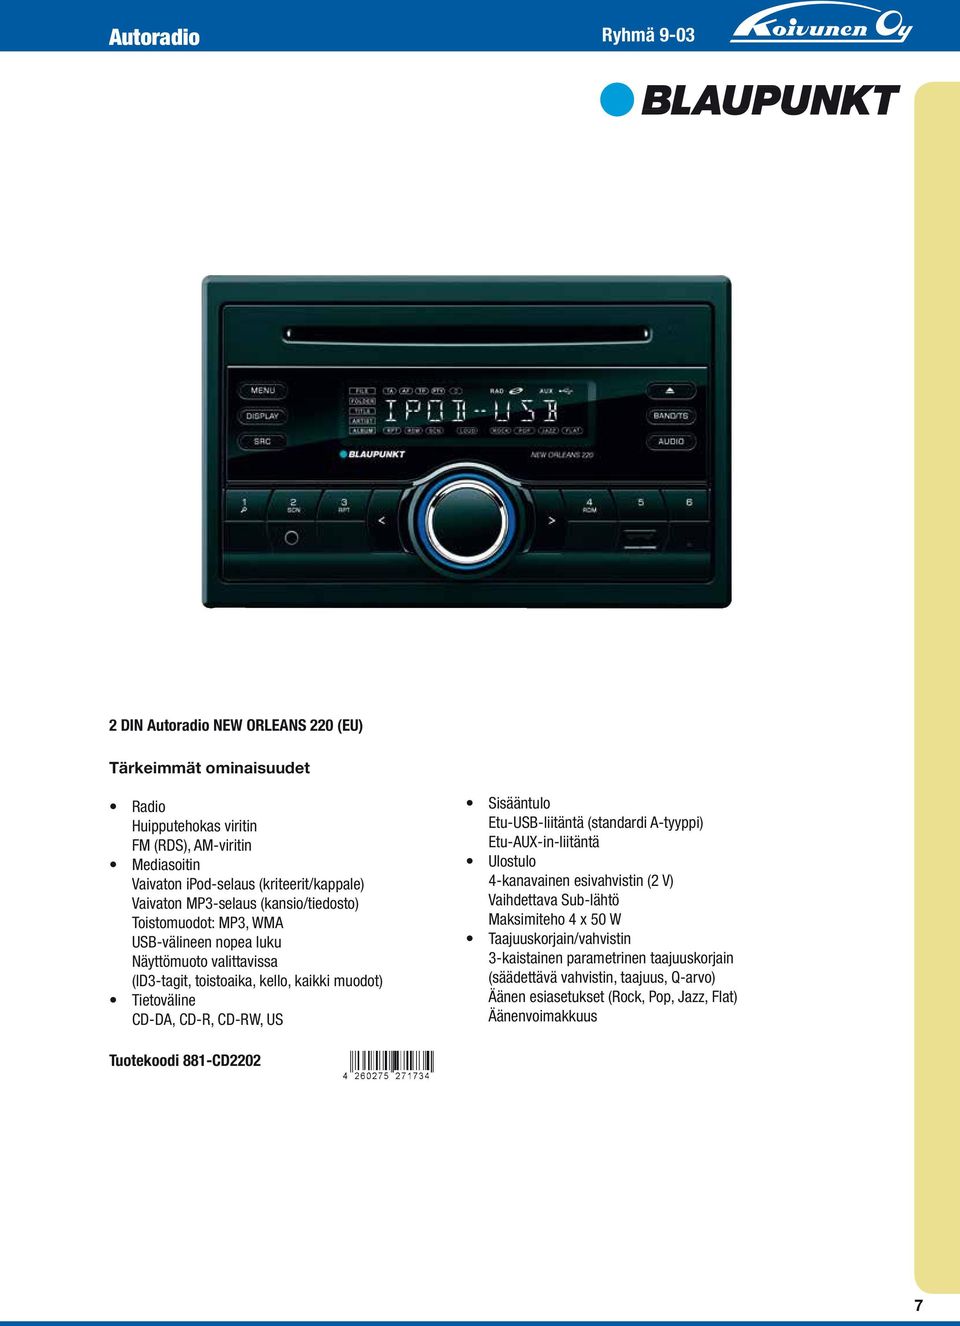 Tietoväline CD-DA, CD-R, CD-RW, US Sisääntulo Etu-USB-liitäntä (standardi A-tyyppi) Etu-AUX-in-liitäntä Ulostulo 4-kanavainen esivahvistin (2 V) Vaihdettava Sub-lähtö Maksimiteho